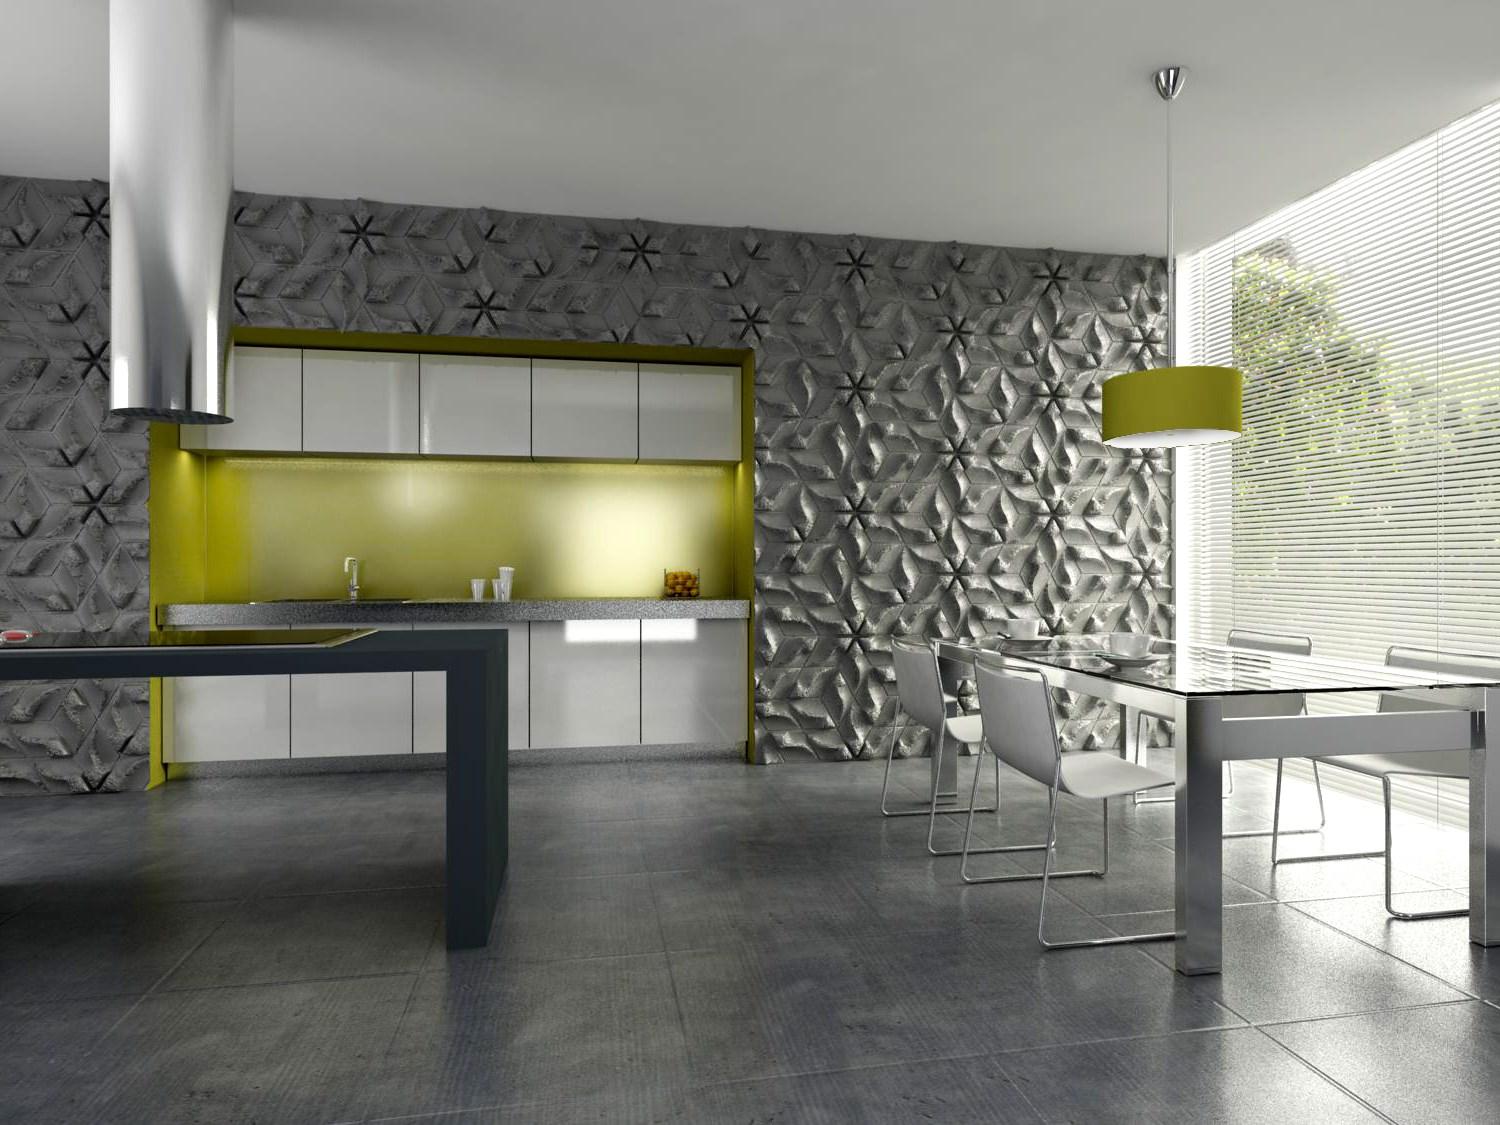 Design Fliesen in 3D #küchenblock #betonfliesen #3dfliesen ©Florisa